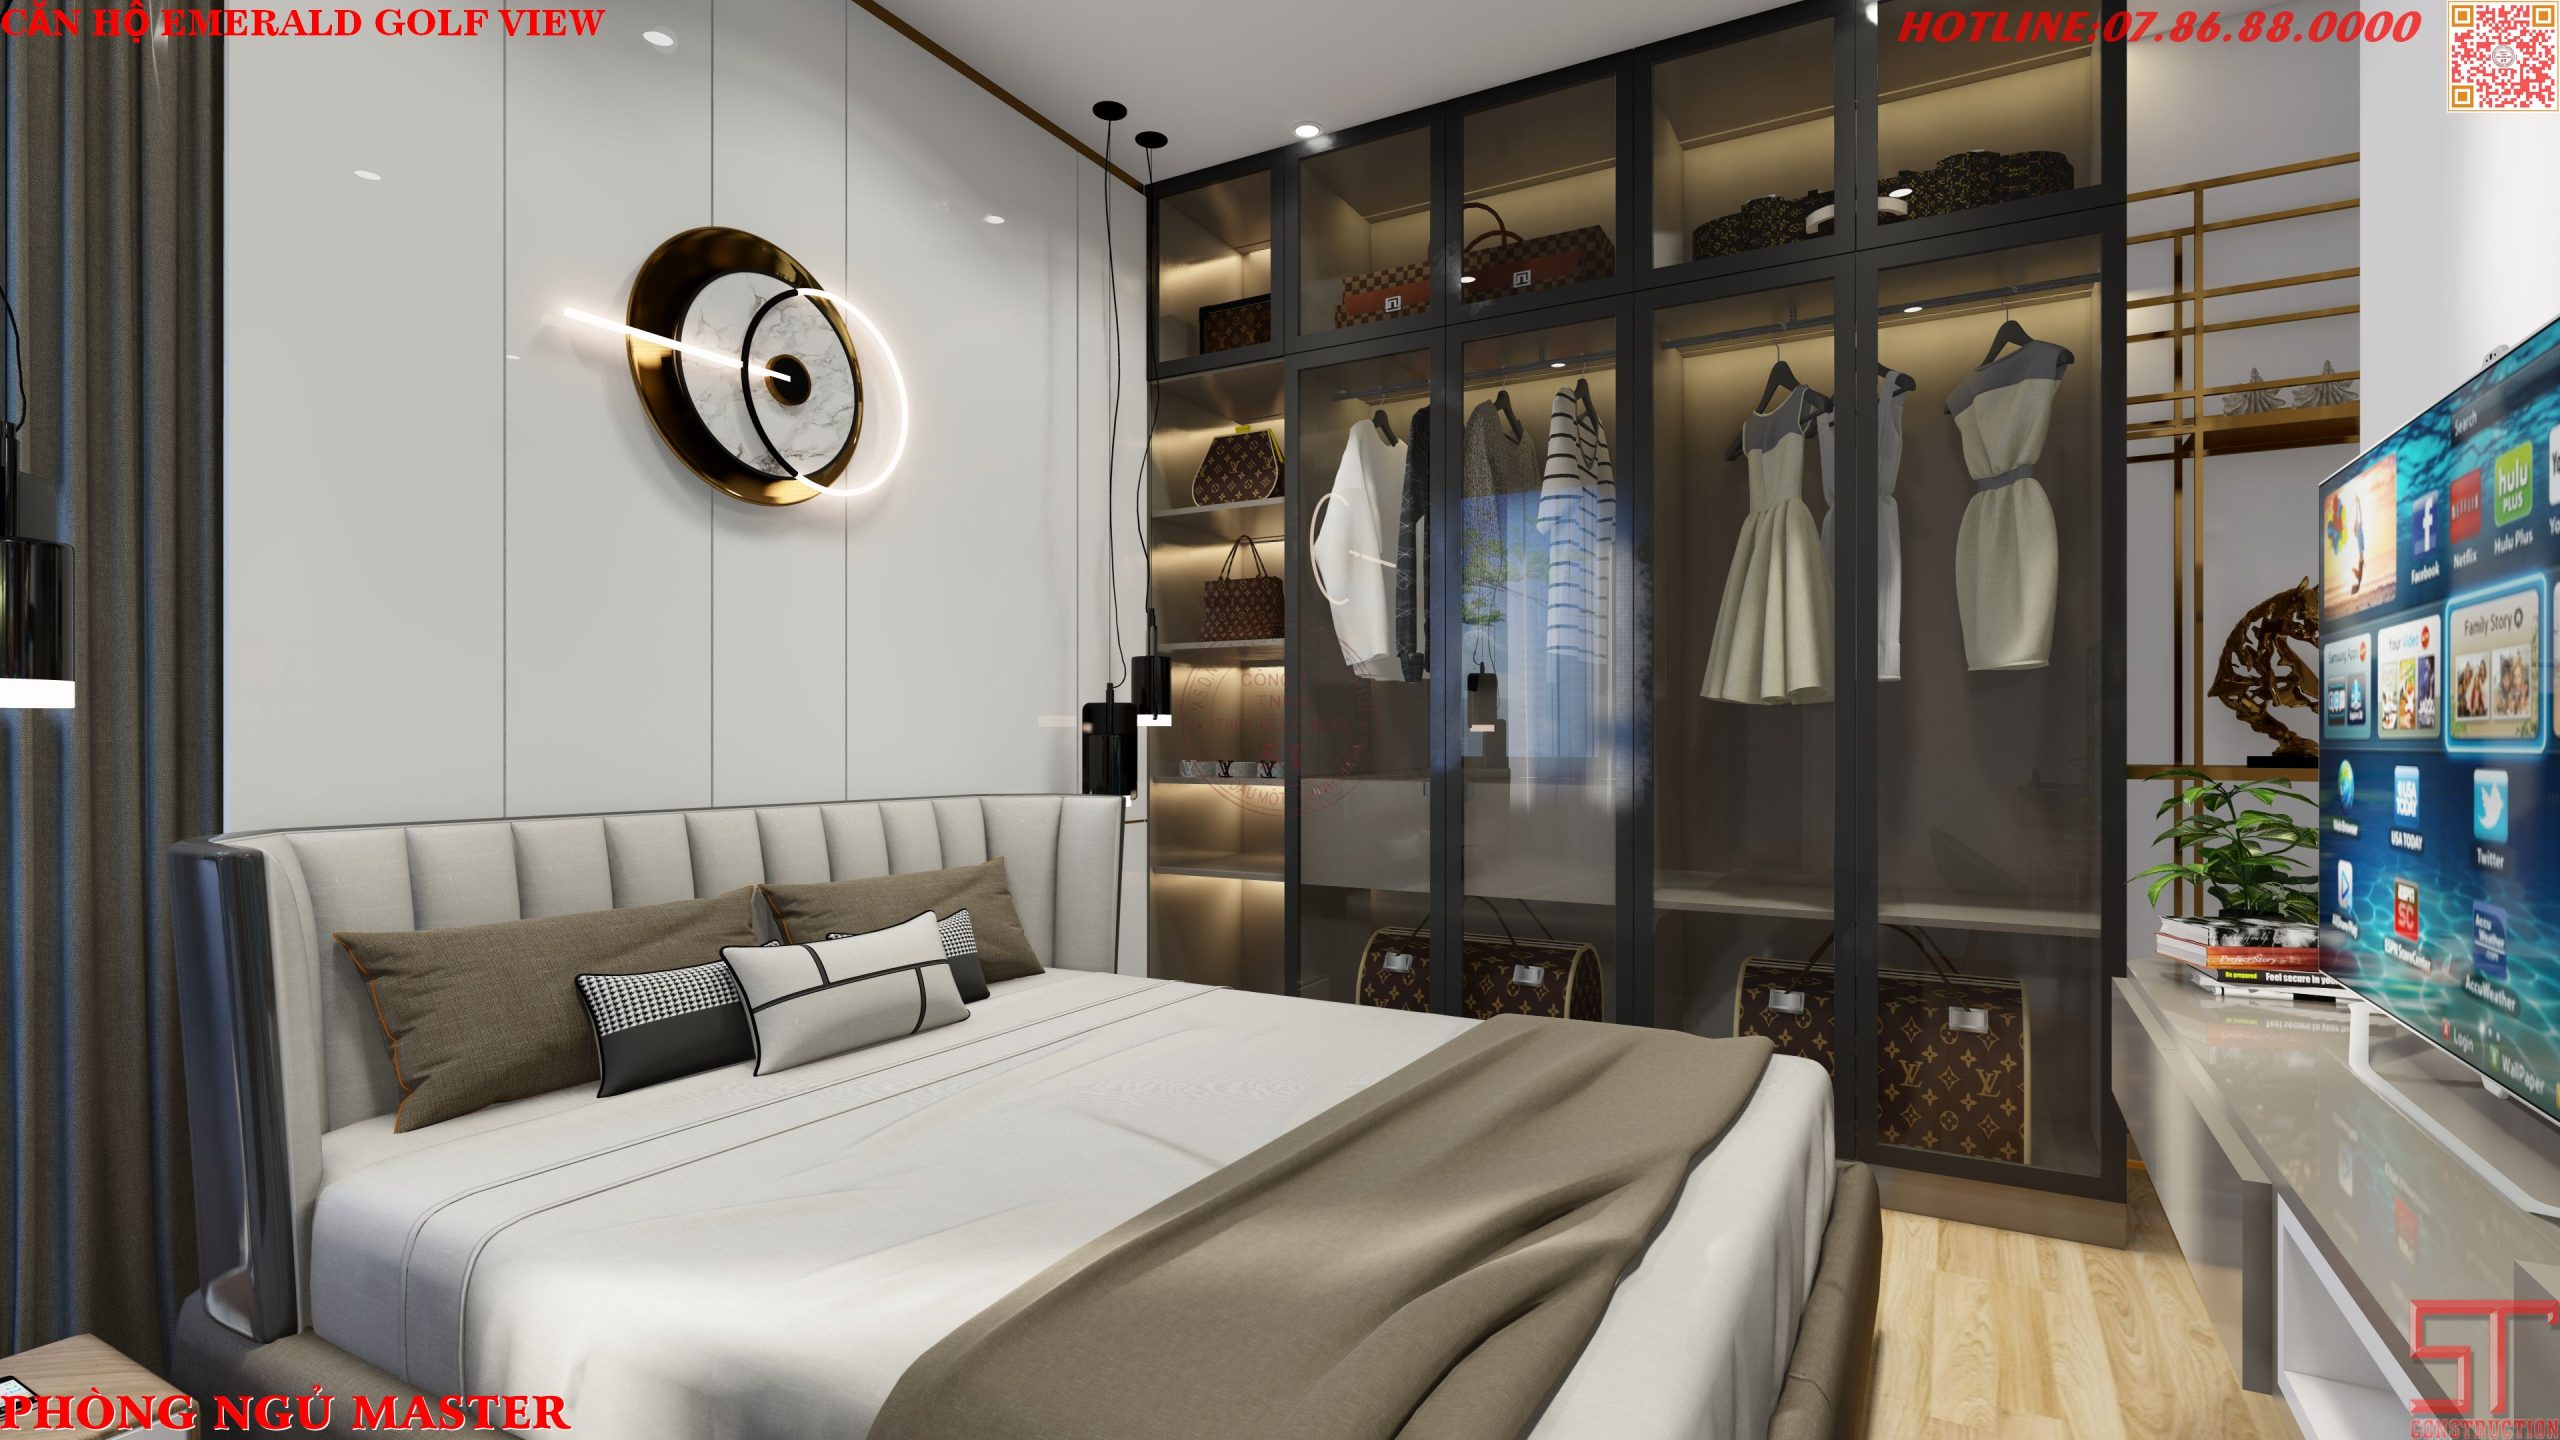 Thiết kế nội thất phòng ngủ căn hộ emerald golf view bình dương mẫu 3 phòng ngủ